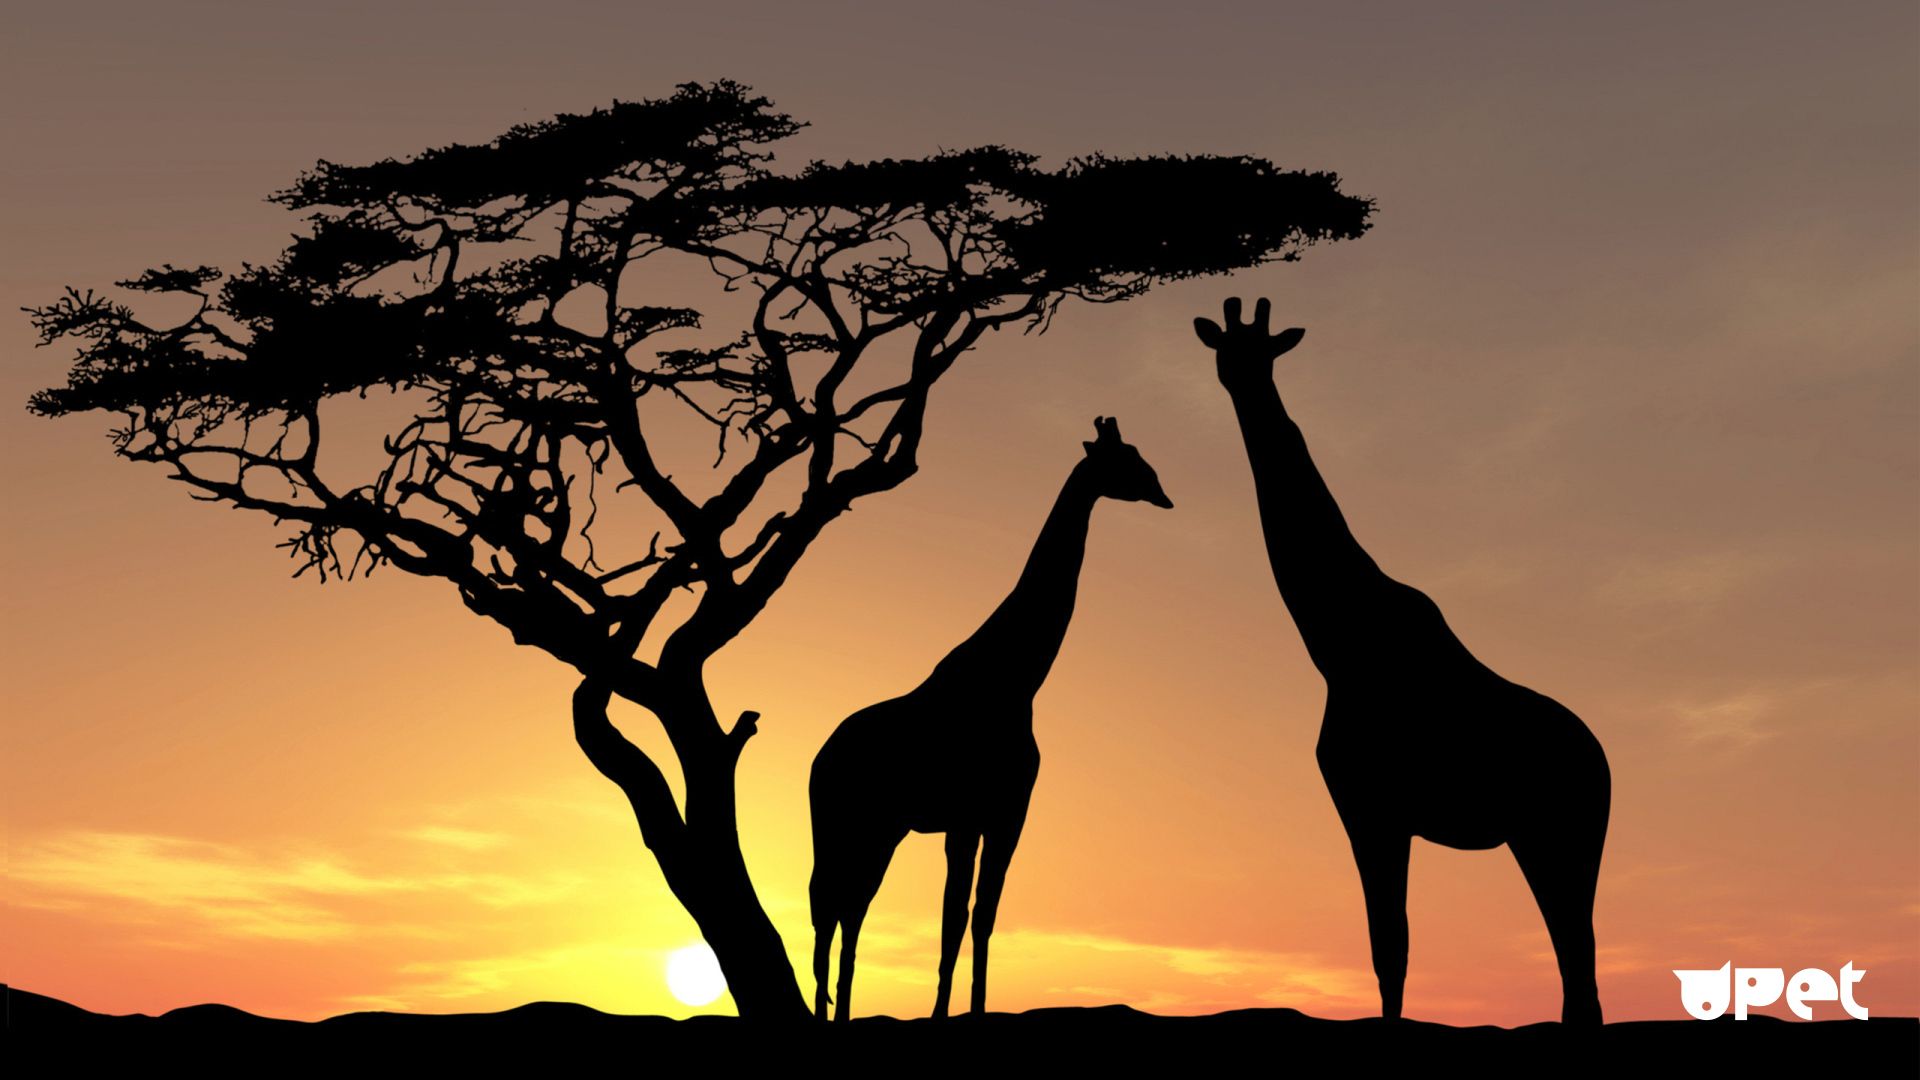 Giraffe At Sunset 